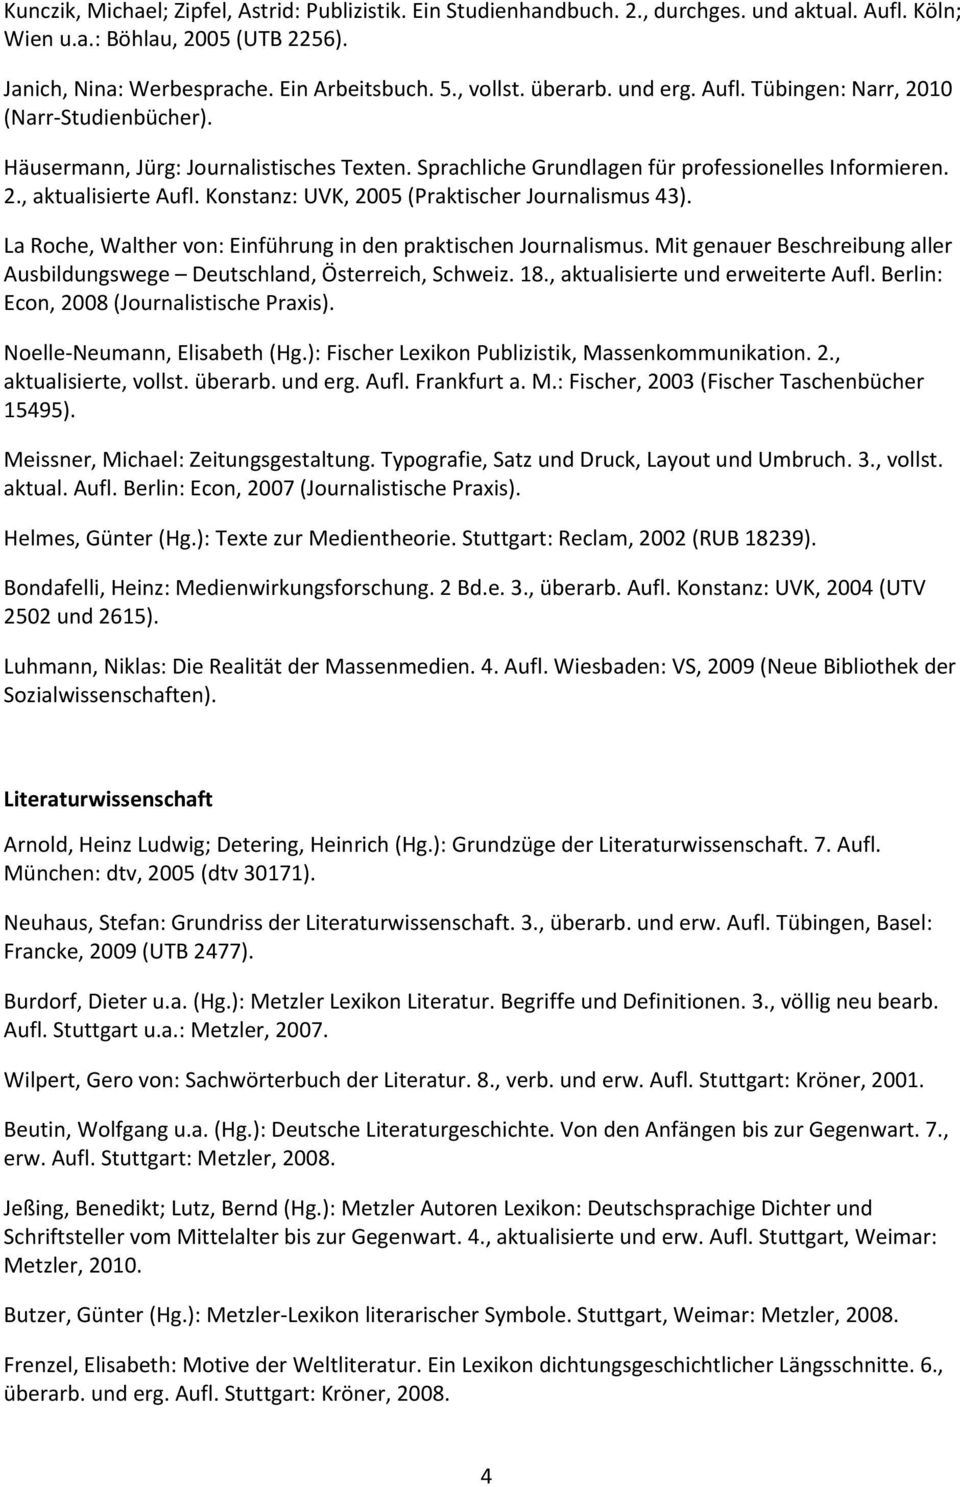 LaRoche,Walthervon:EinführungindenpraktischenJournalismus.MitgenauerBeschreibungaller Ausbildungswege Deutschland,Österreich,Schweiz.18.,aktualisierteunderweiterteAufl.